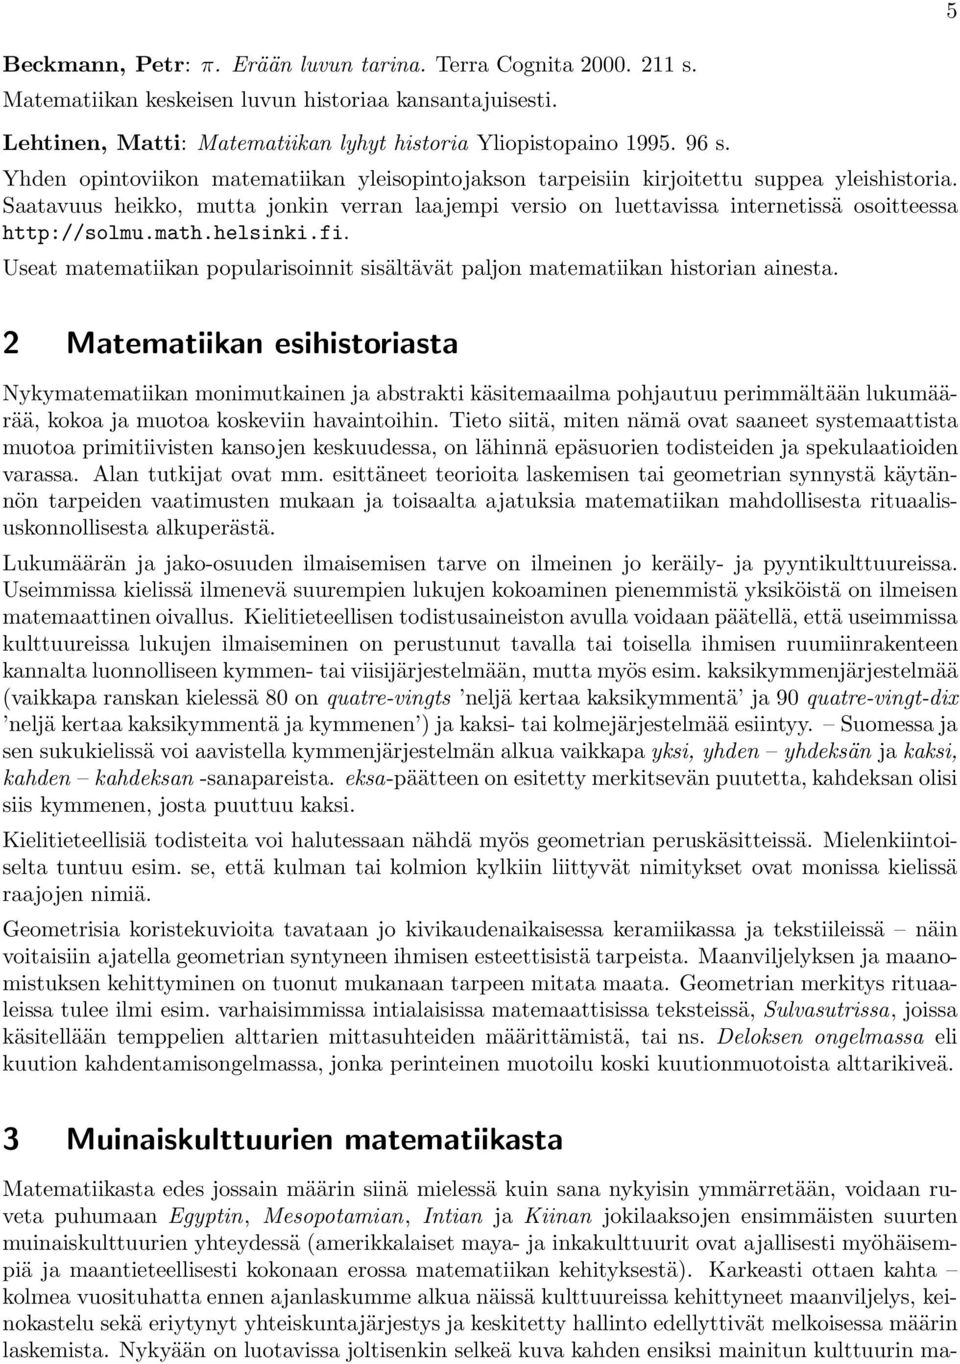 Saatavuus heikko, mutta jonkin verran laajempi versio on luettavissa internetissä osoitteessa http://solmu.math.helsinki.fi.